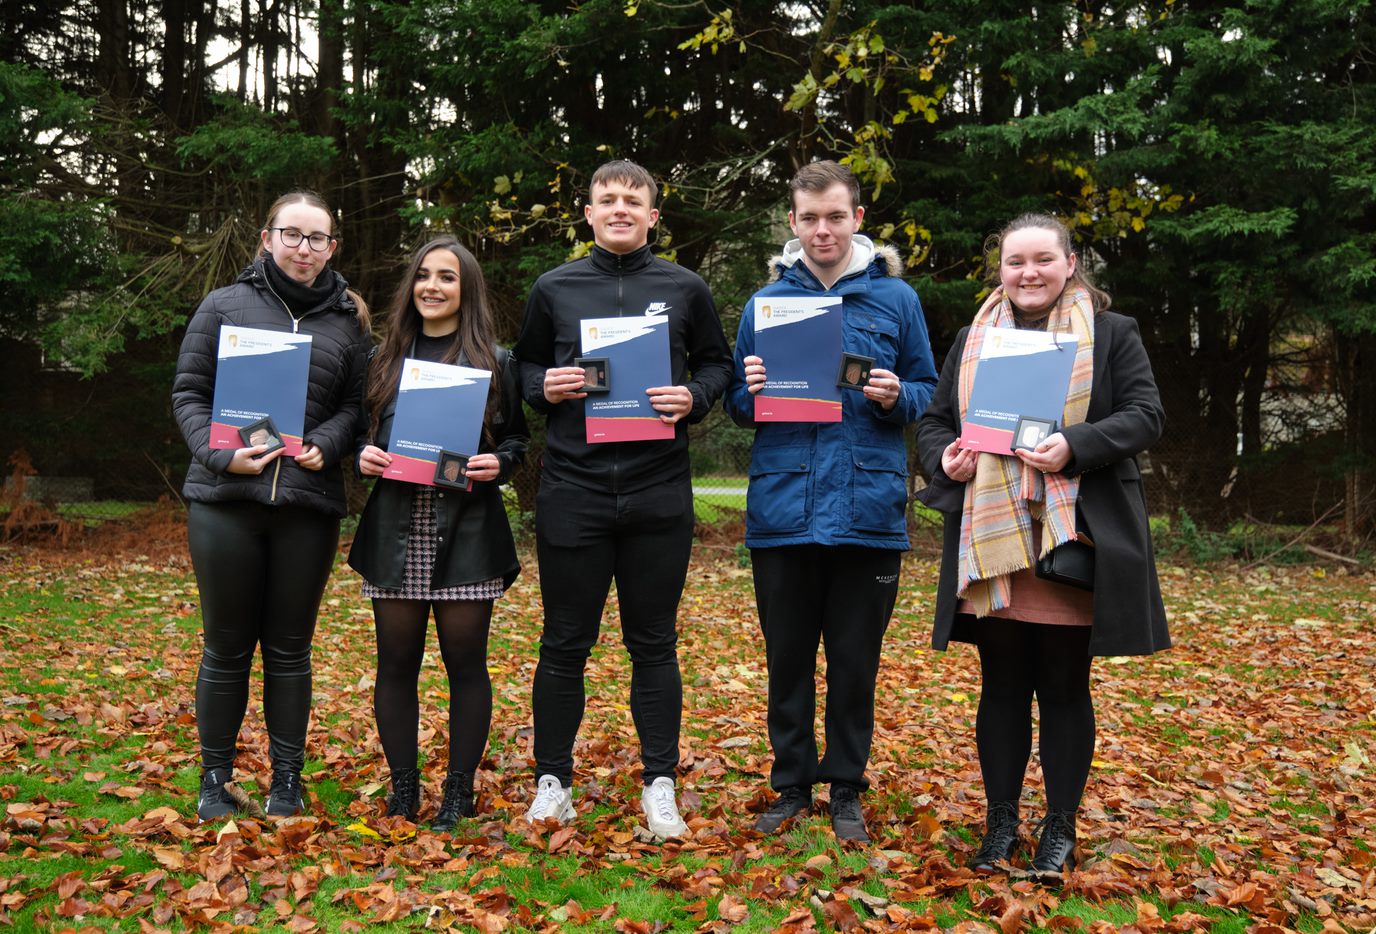 Участники Youth Work Ireland Louth Эмма, Хлоя, Дарра, Джеймс и Иона на фото получают свои награды Gaisce Awards в Ratra House в парке Феникс